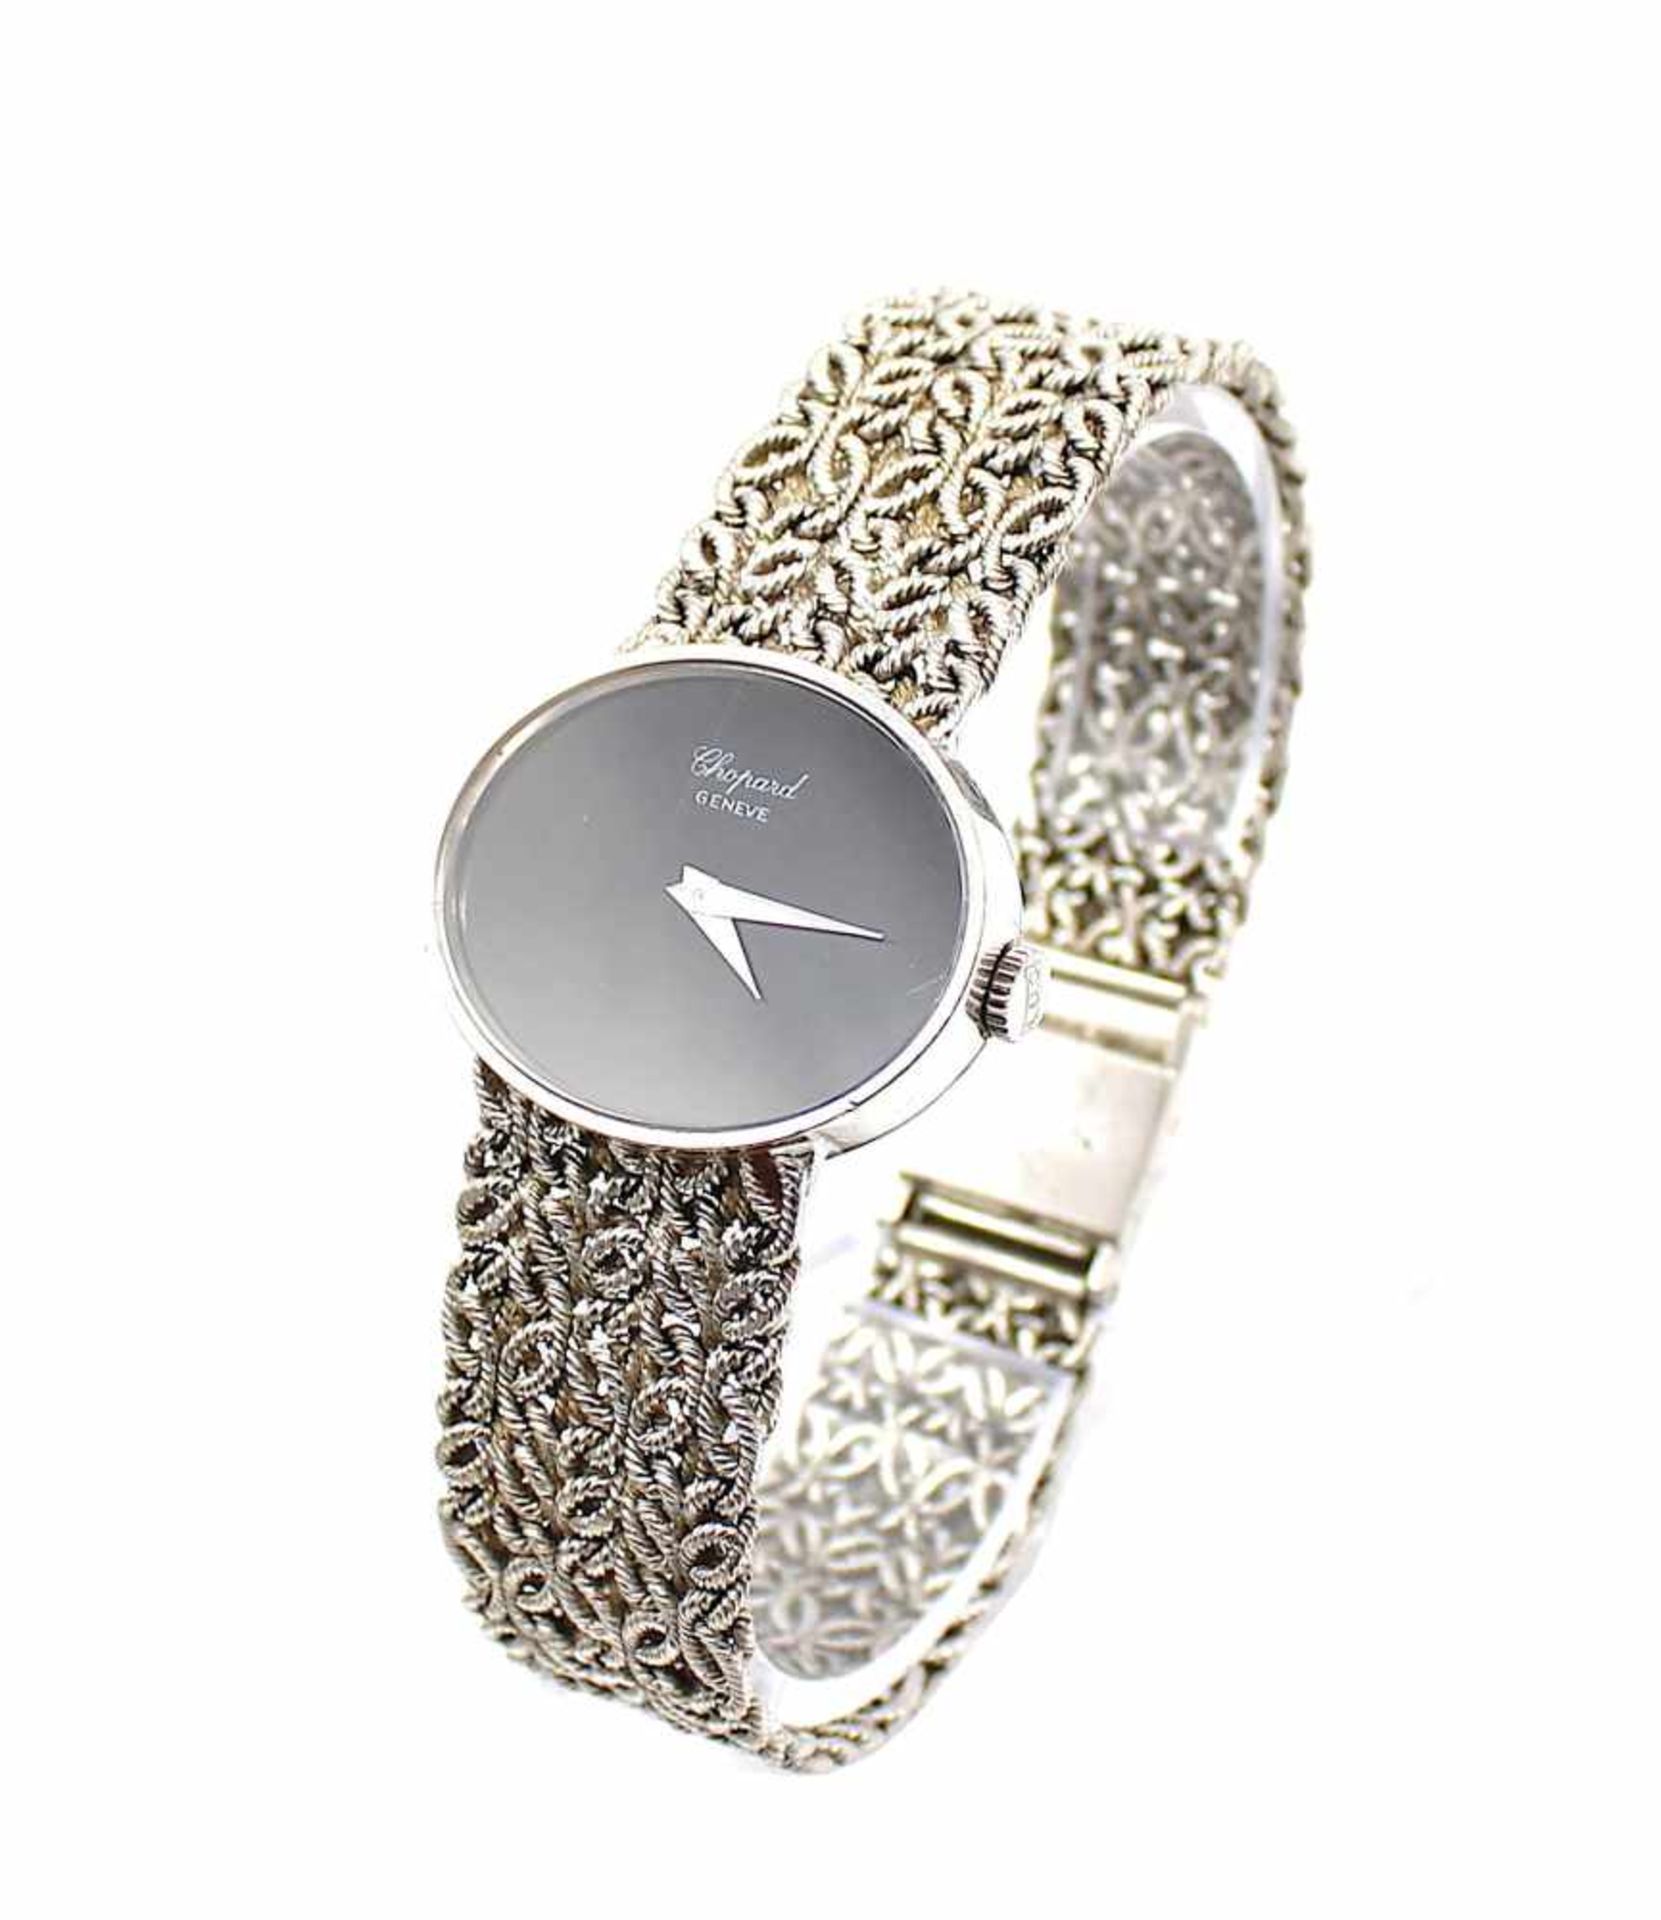 Chopard LUC Damenarmbanduhr aus 750er Weißgold. Die Uhr ist gangbar aber eine Revision wird